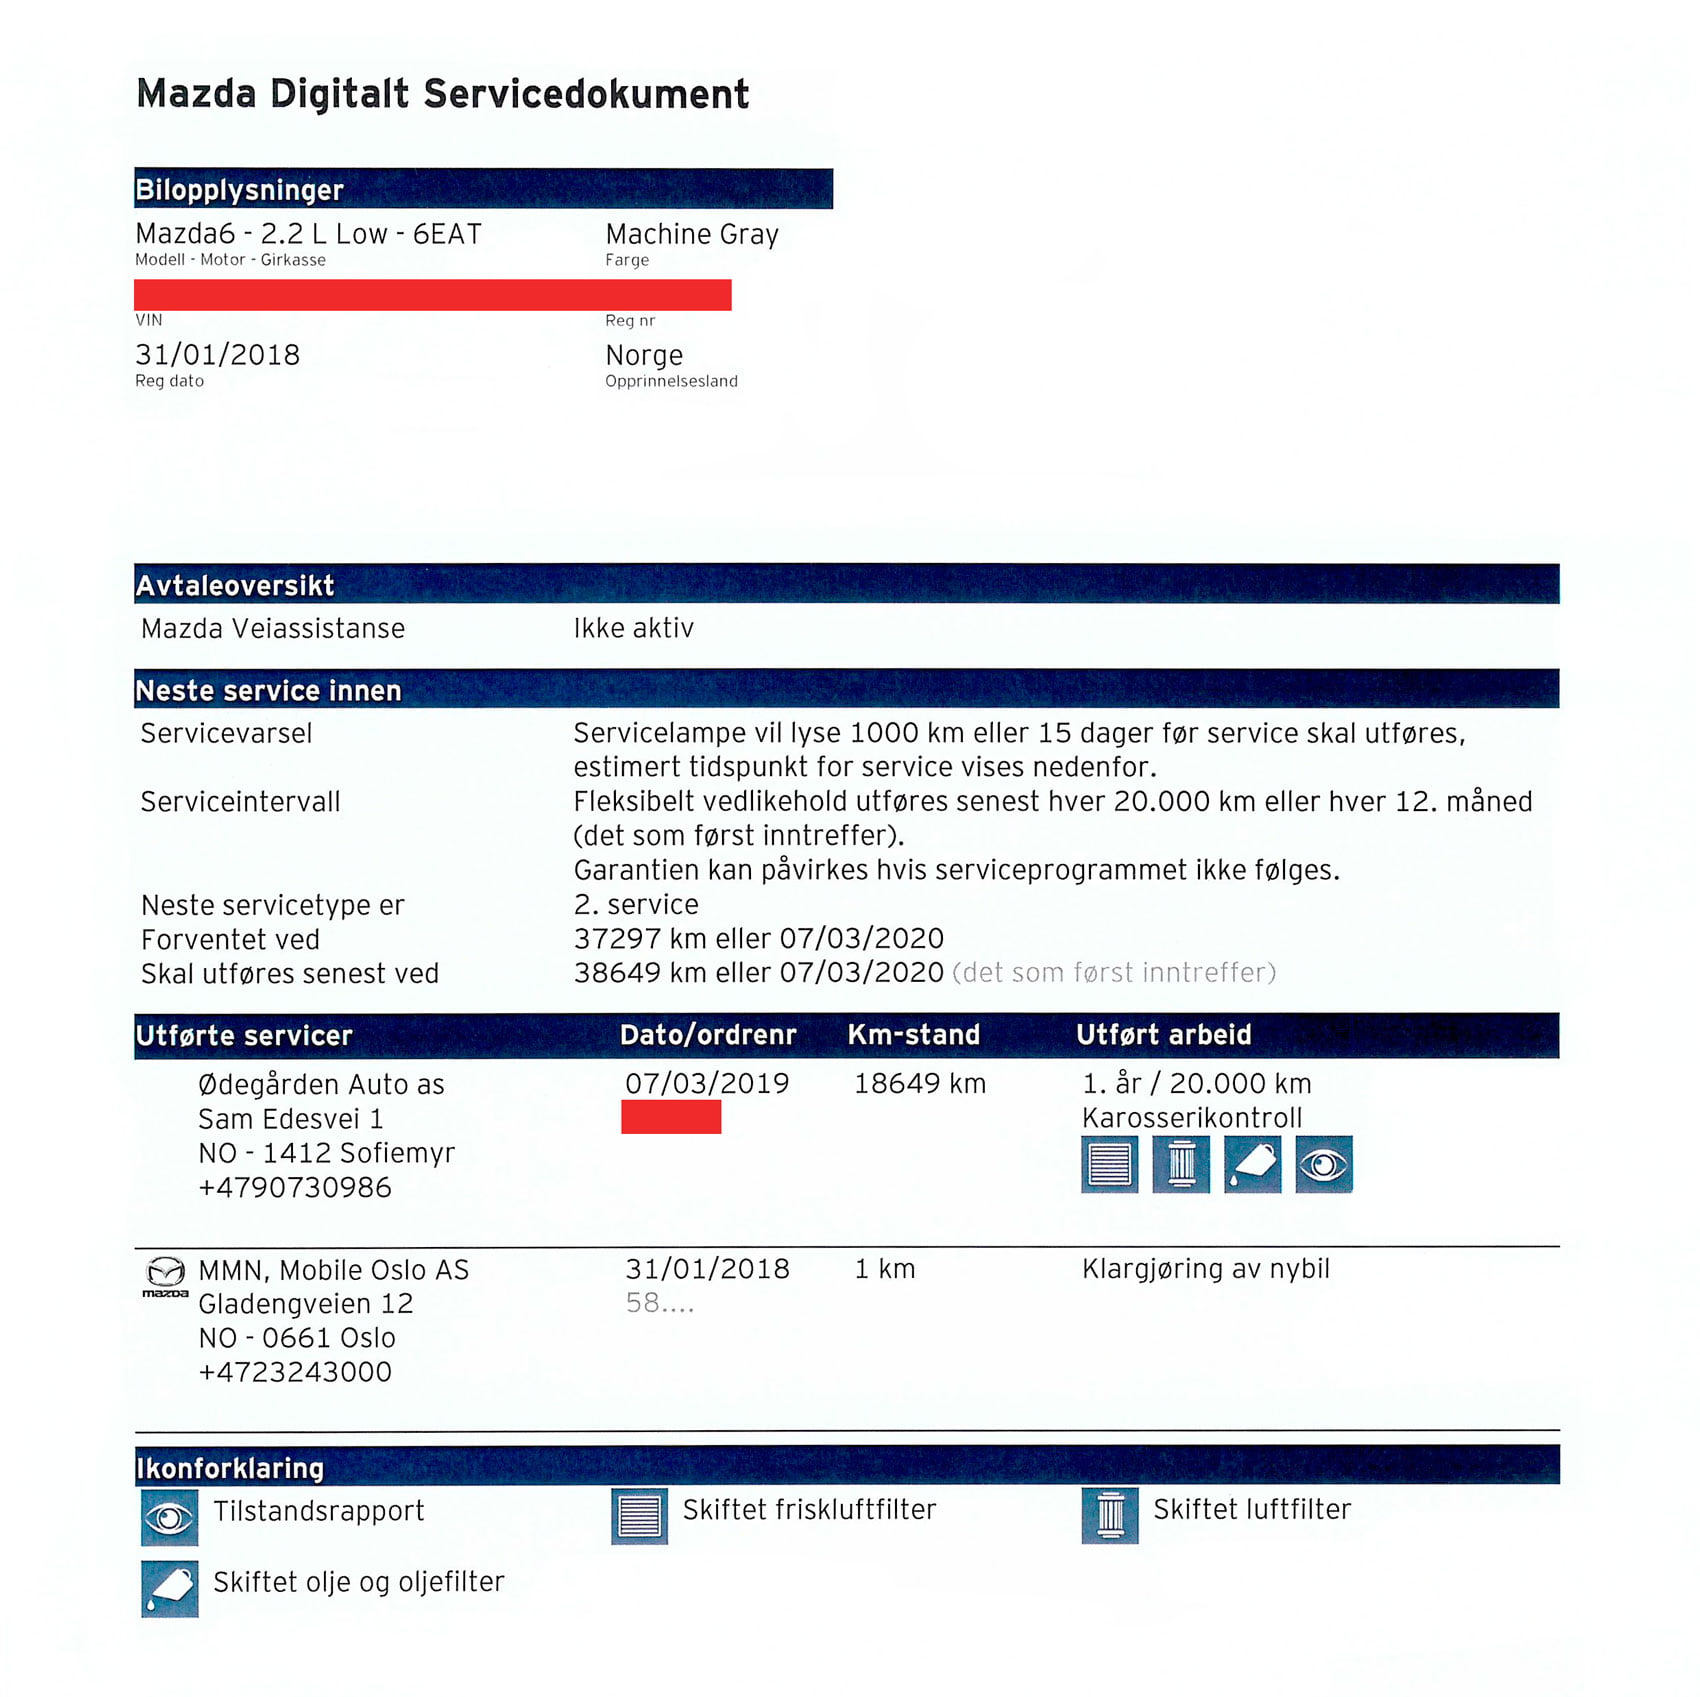 Mazda digitalt servicedokument Ødegården Auto